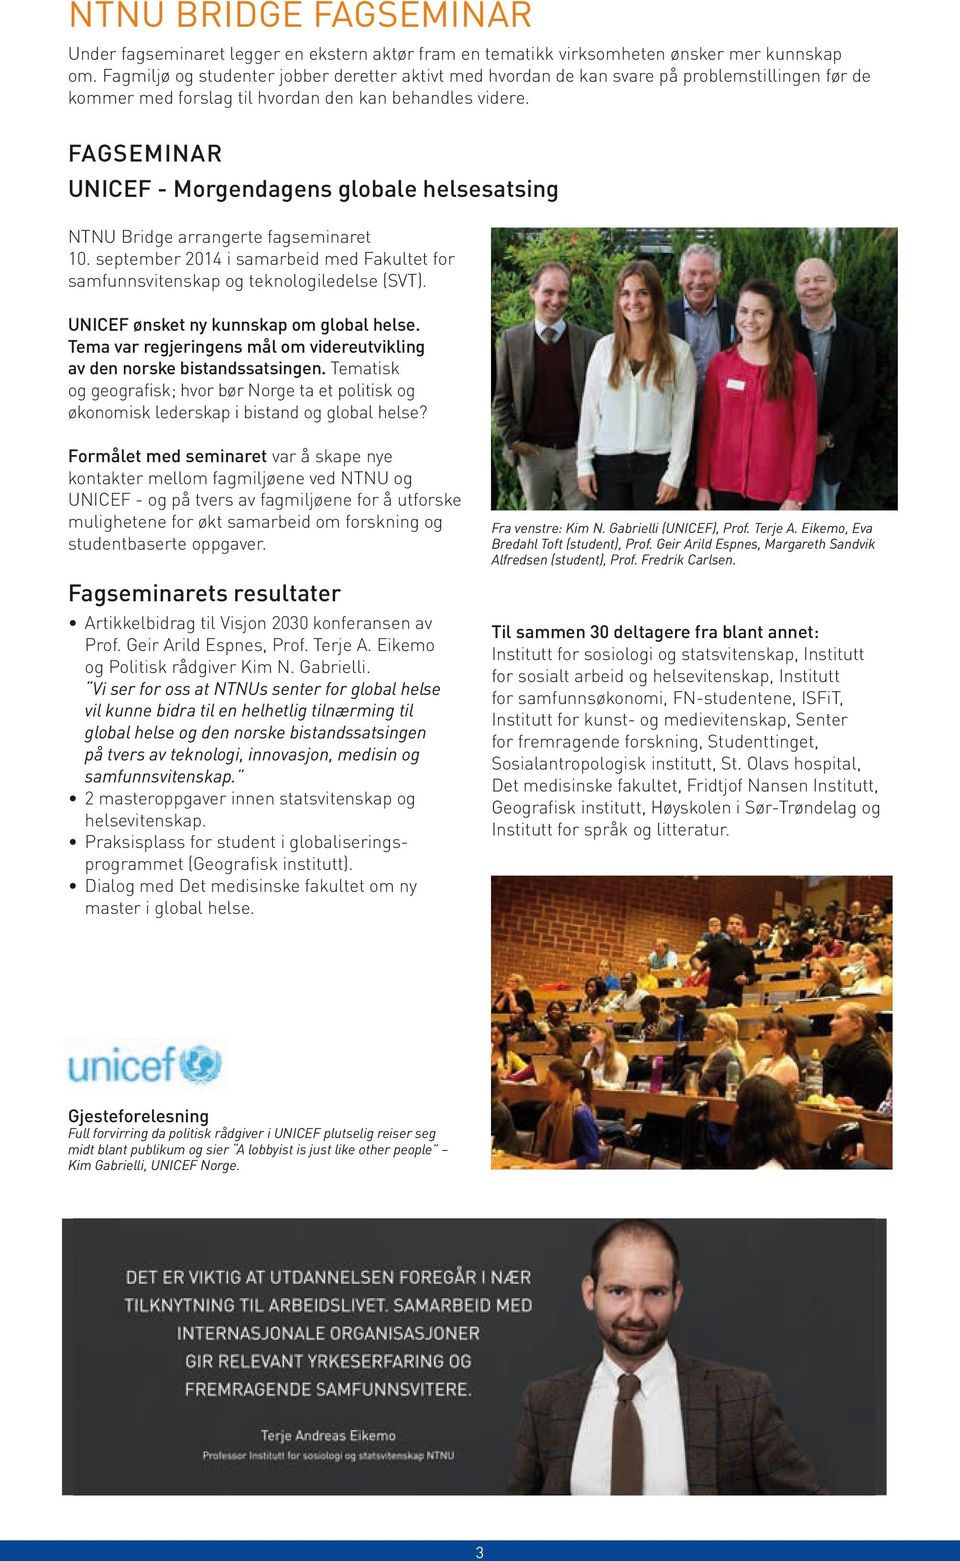 FAGSEMINAR UNICEF - Morgendagens globale helsesatsing NTNU Bridge arrangerte fagseminaret 10. september 2014 i samarbeid med Fakultet for samfunns vitenskap og teknologiledelse (SVT).